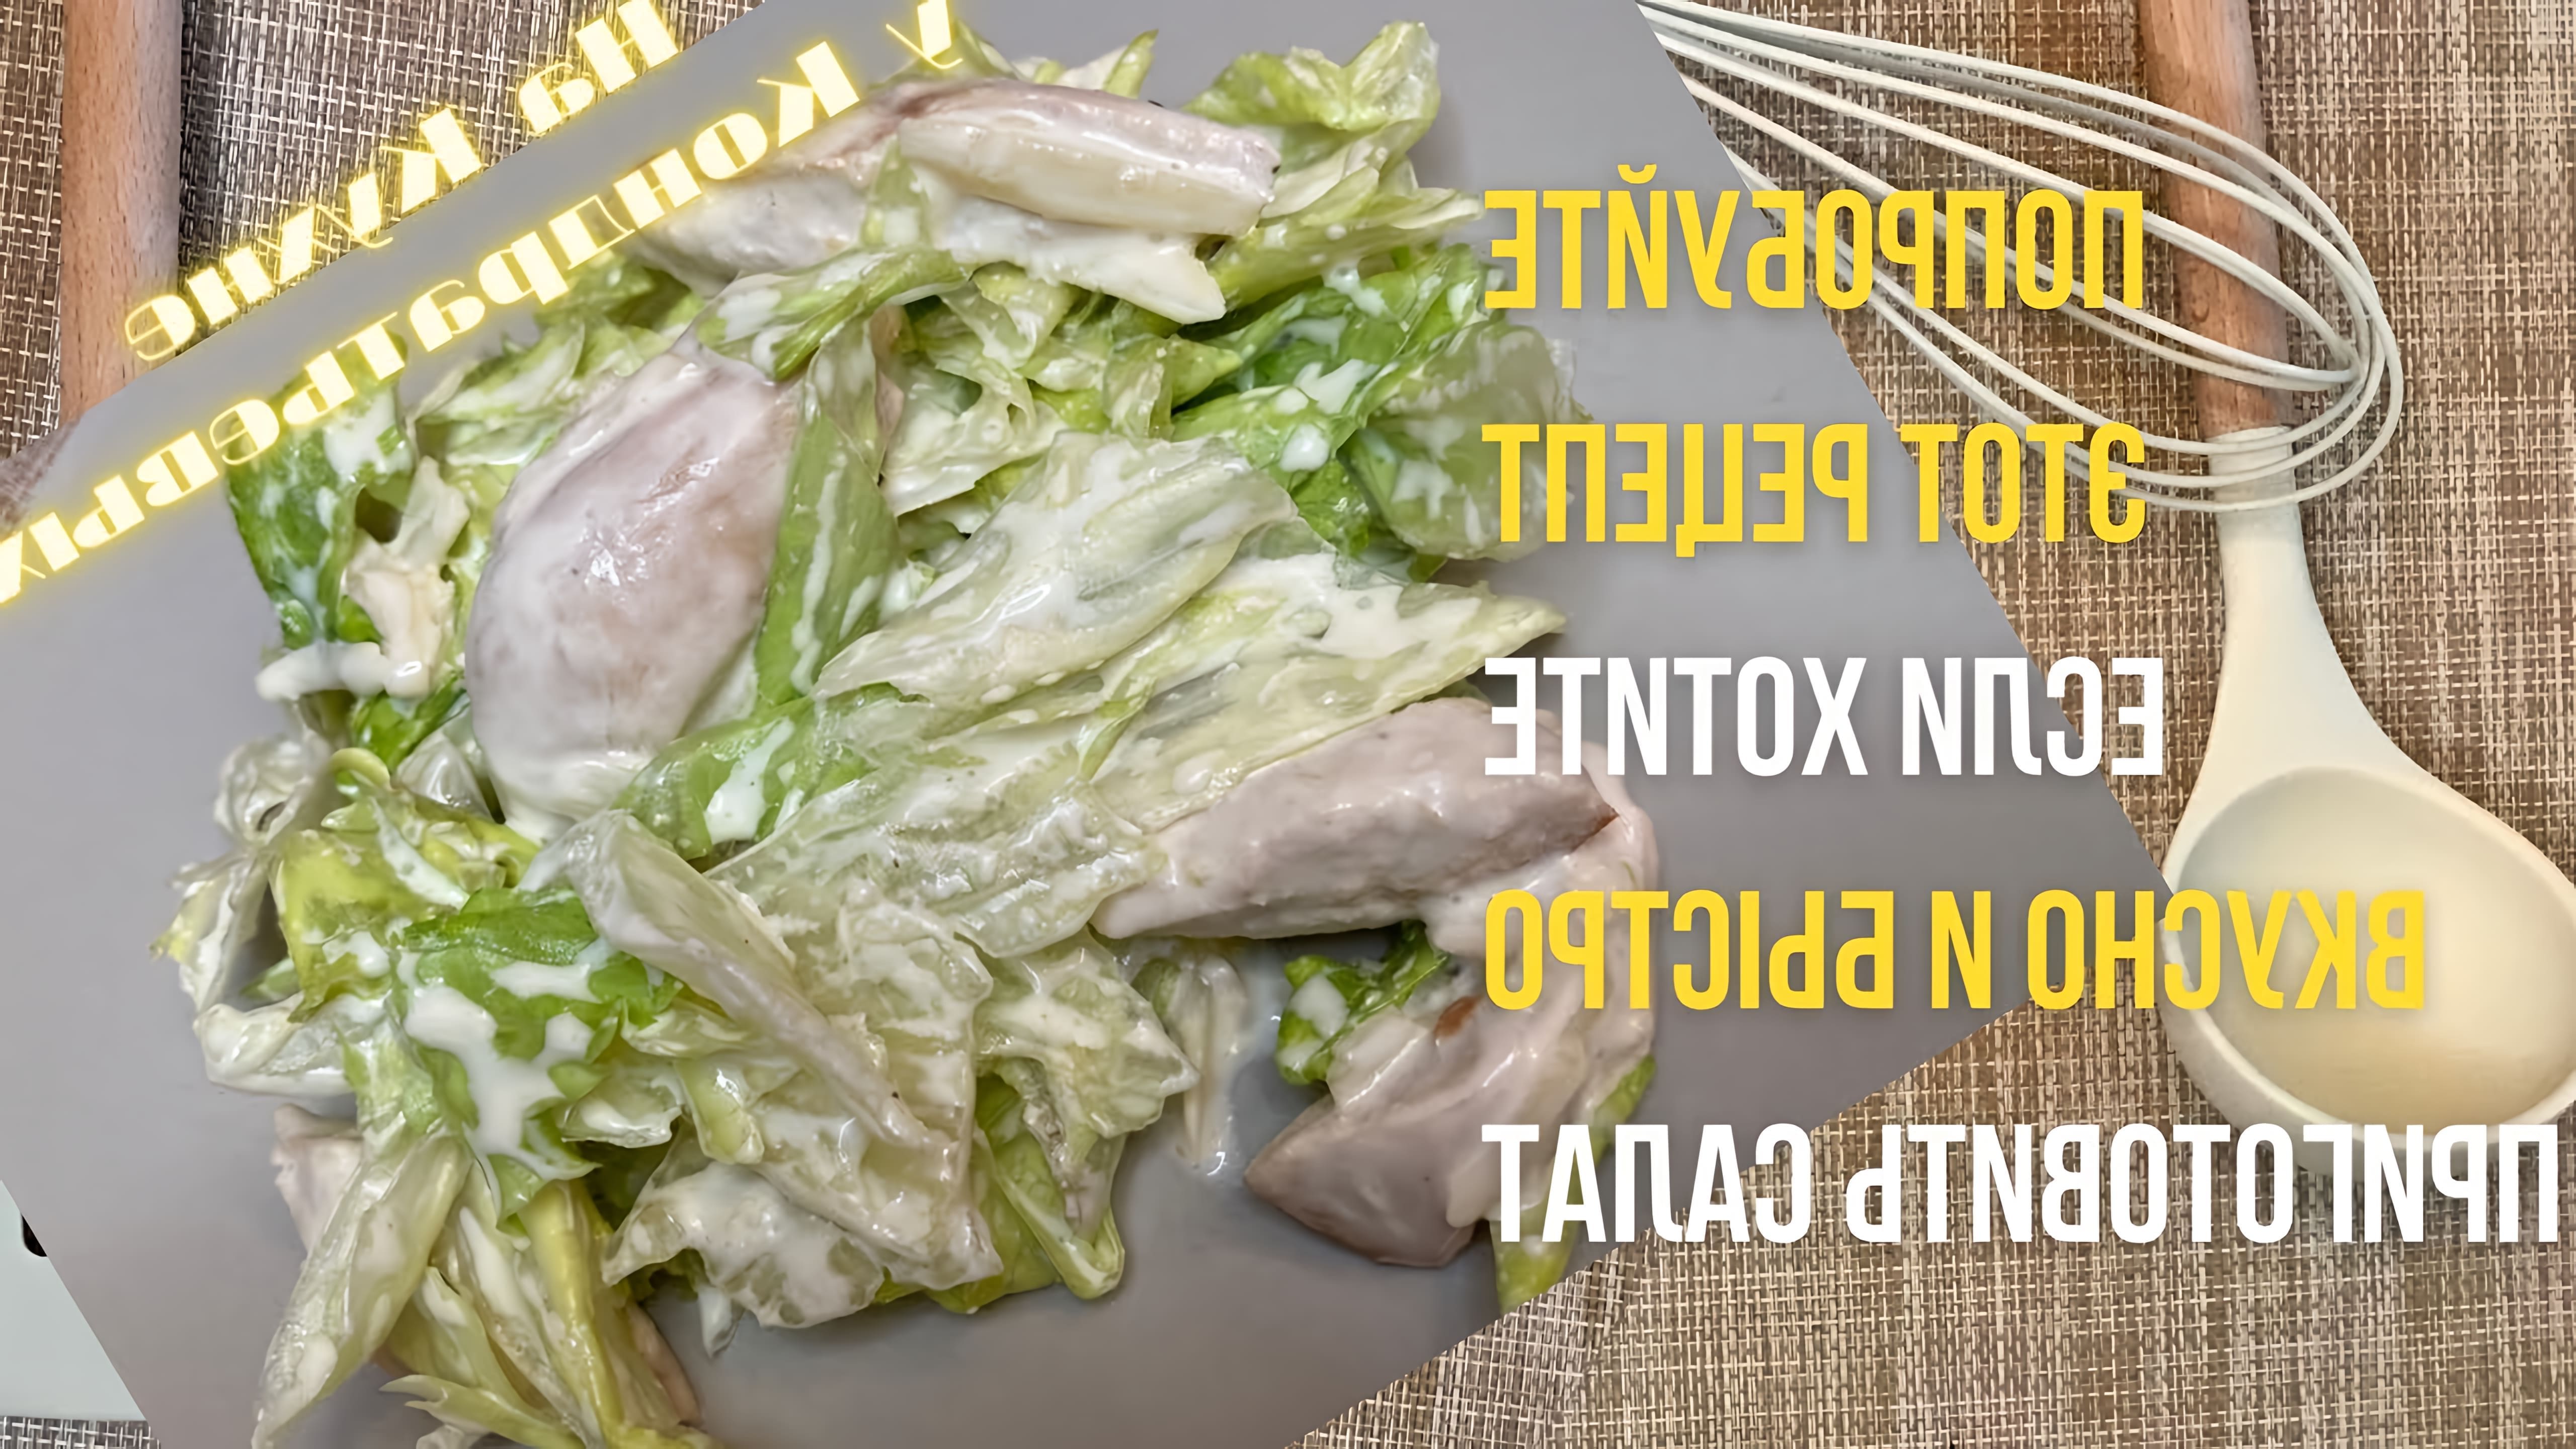 В этом видео демонстрируется рецепт салата Айсберг с куриной грудкой, который является альтернативой салату Цезарь